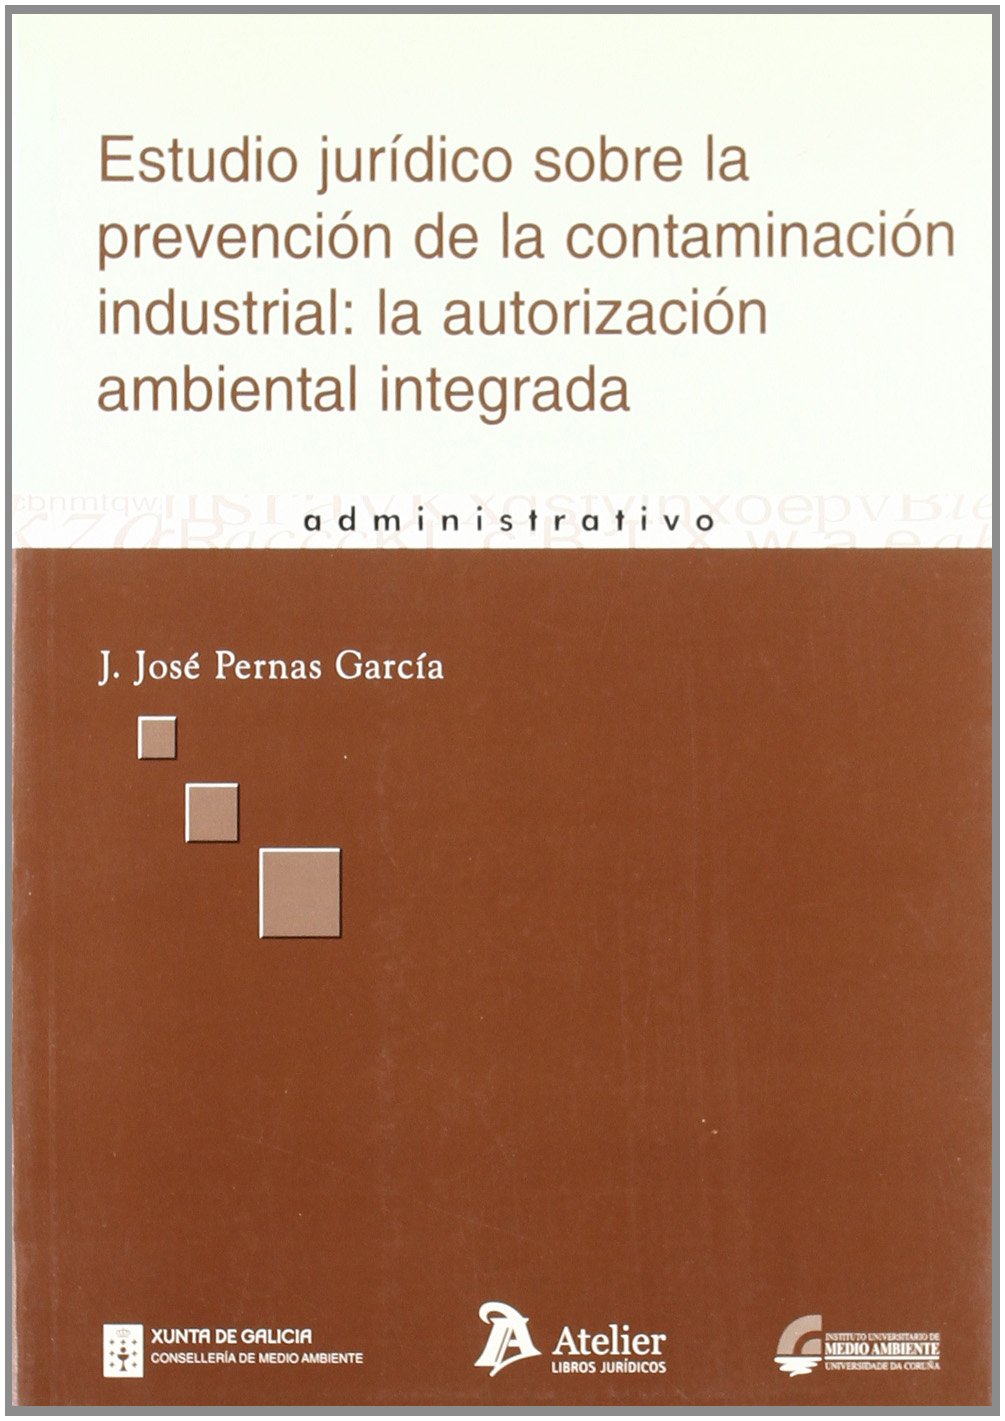 Estudio jurídico sobre la prevención de la contaminación industrial